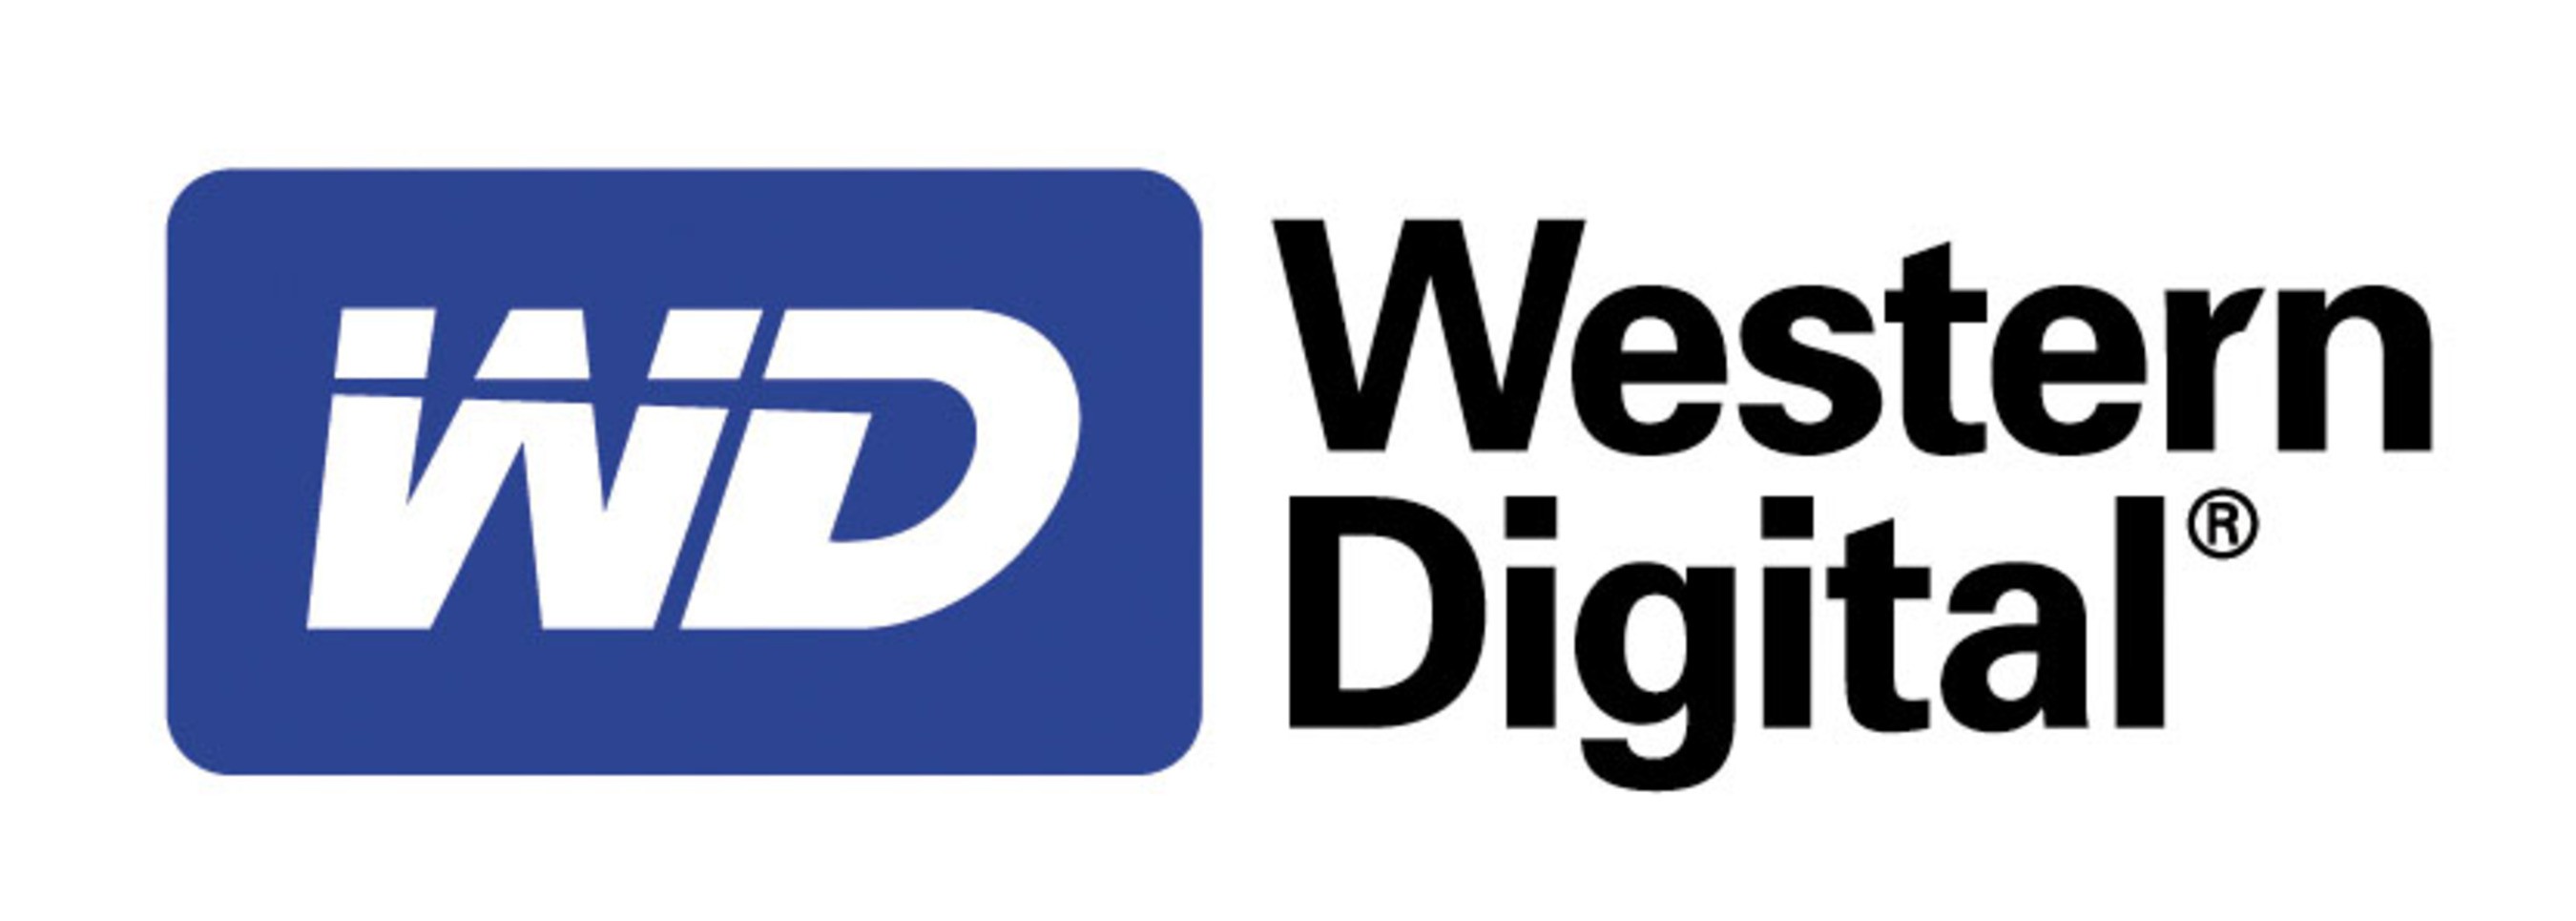 وسترن دیجیتال (Western Digital)